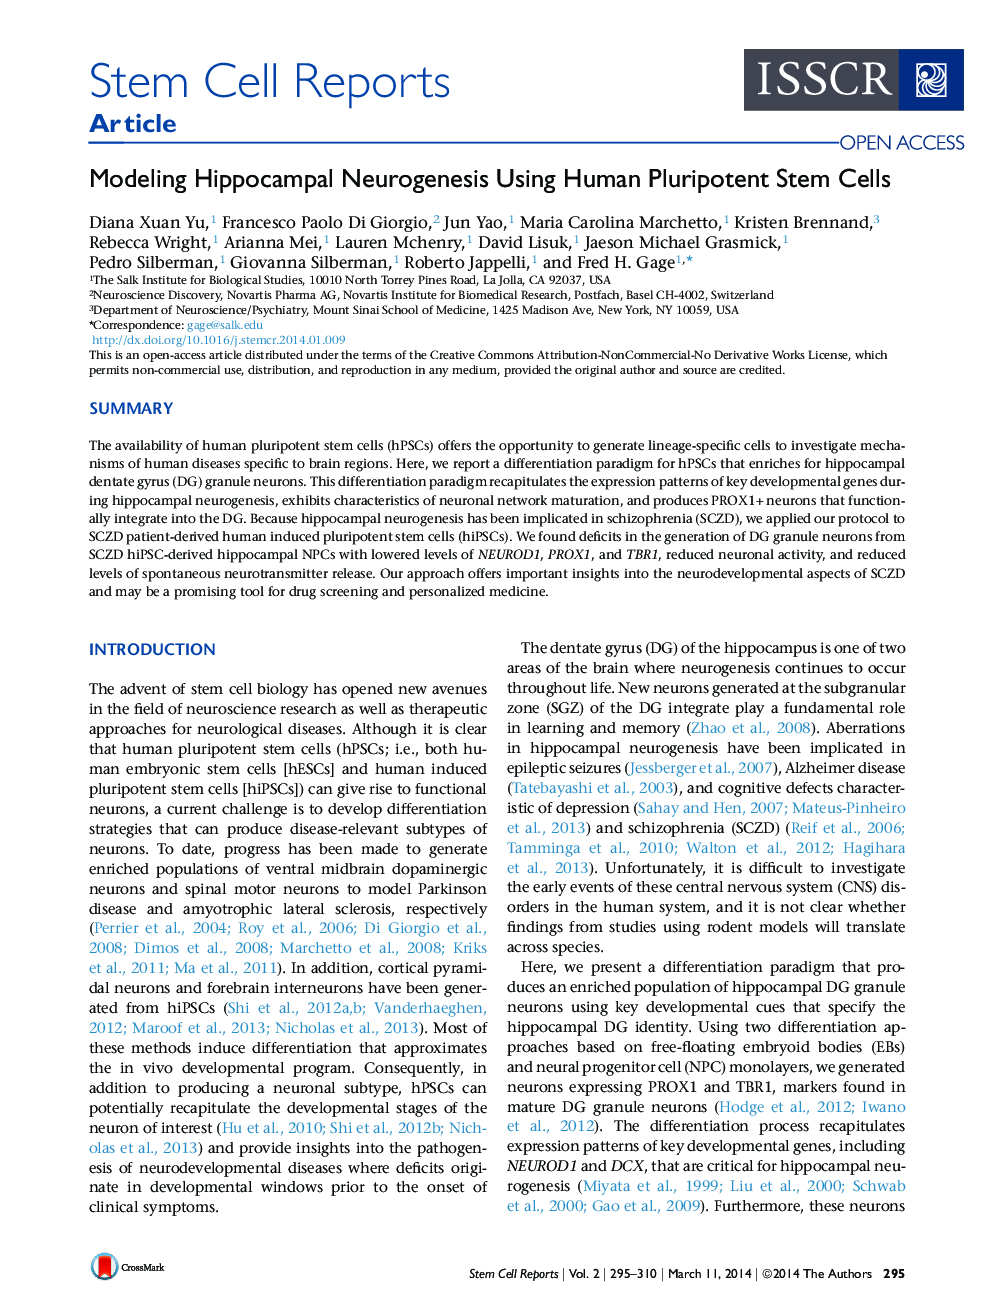 مدل سازی نوروژنز هیپوکامپ با استفاده از سلول های بنیادی پلورپوپتوس انسان 